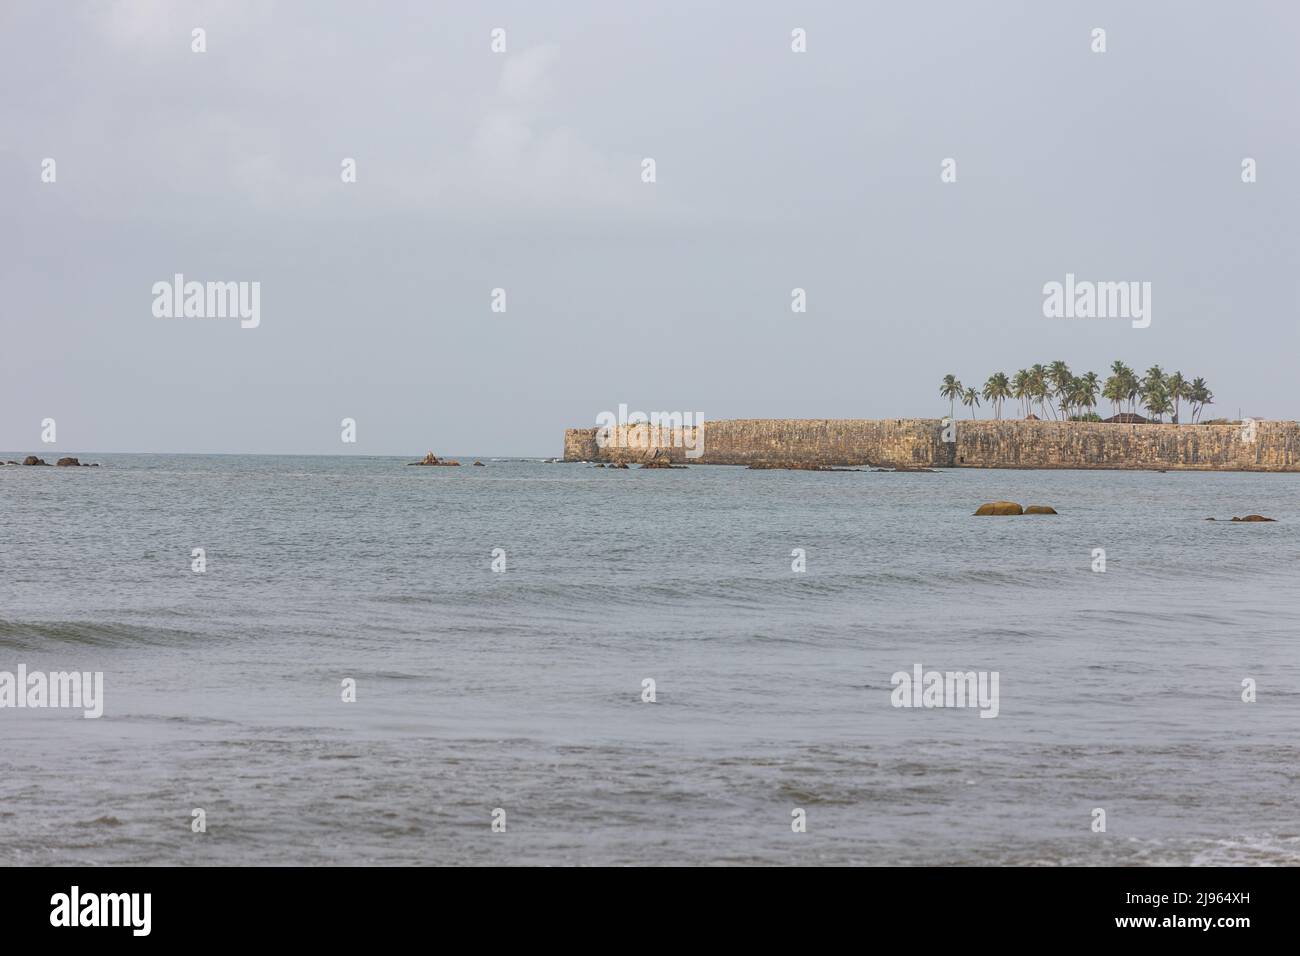 Vue de l'immense fort Sindhudurg qui s'étend dans la mer d'Arabie comme vu de Wayari Bhurnath Beach, Malvan, Maharashtra, Inde Banque D'Images